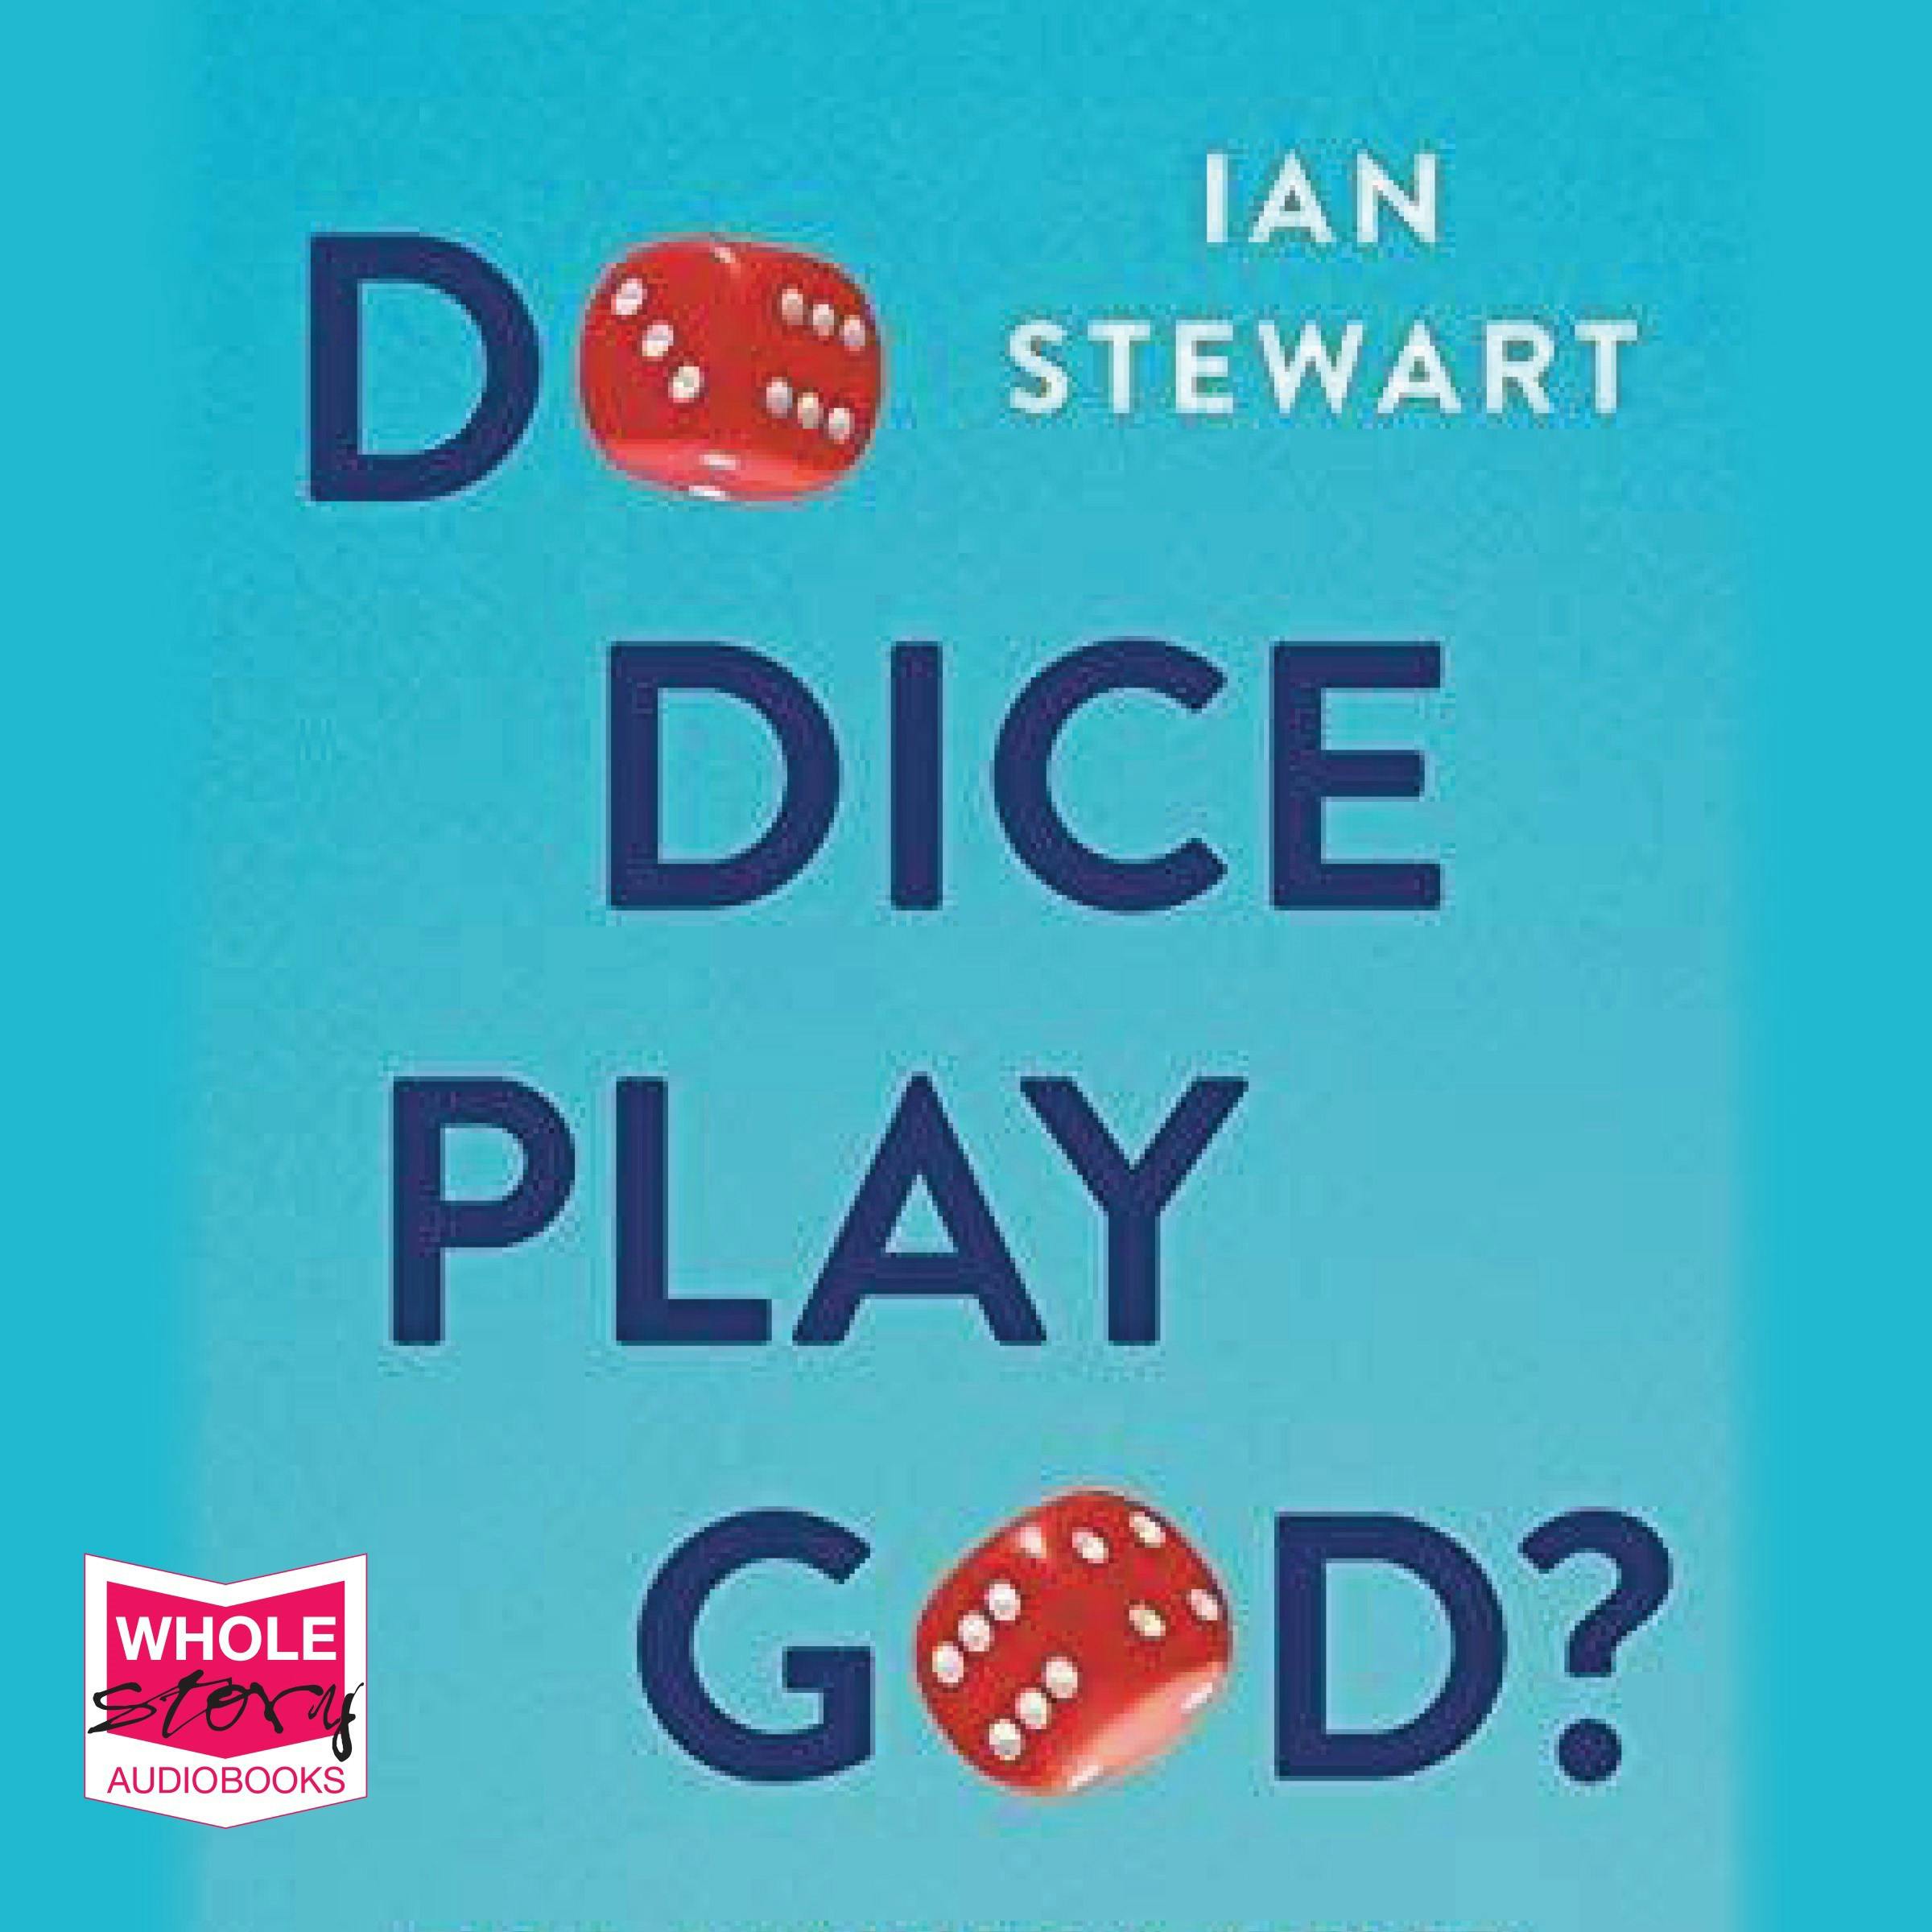 Do Dice Play God? - Ian Stewart